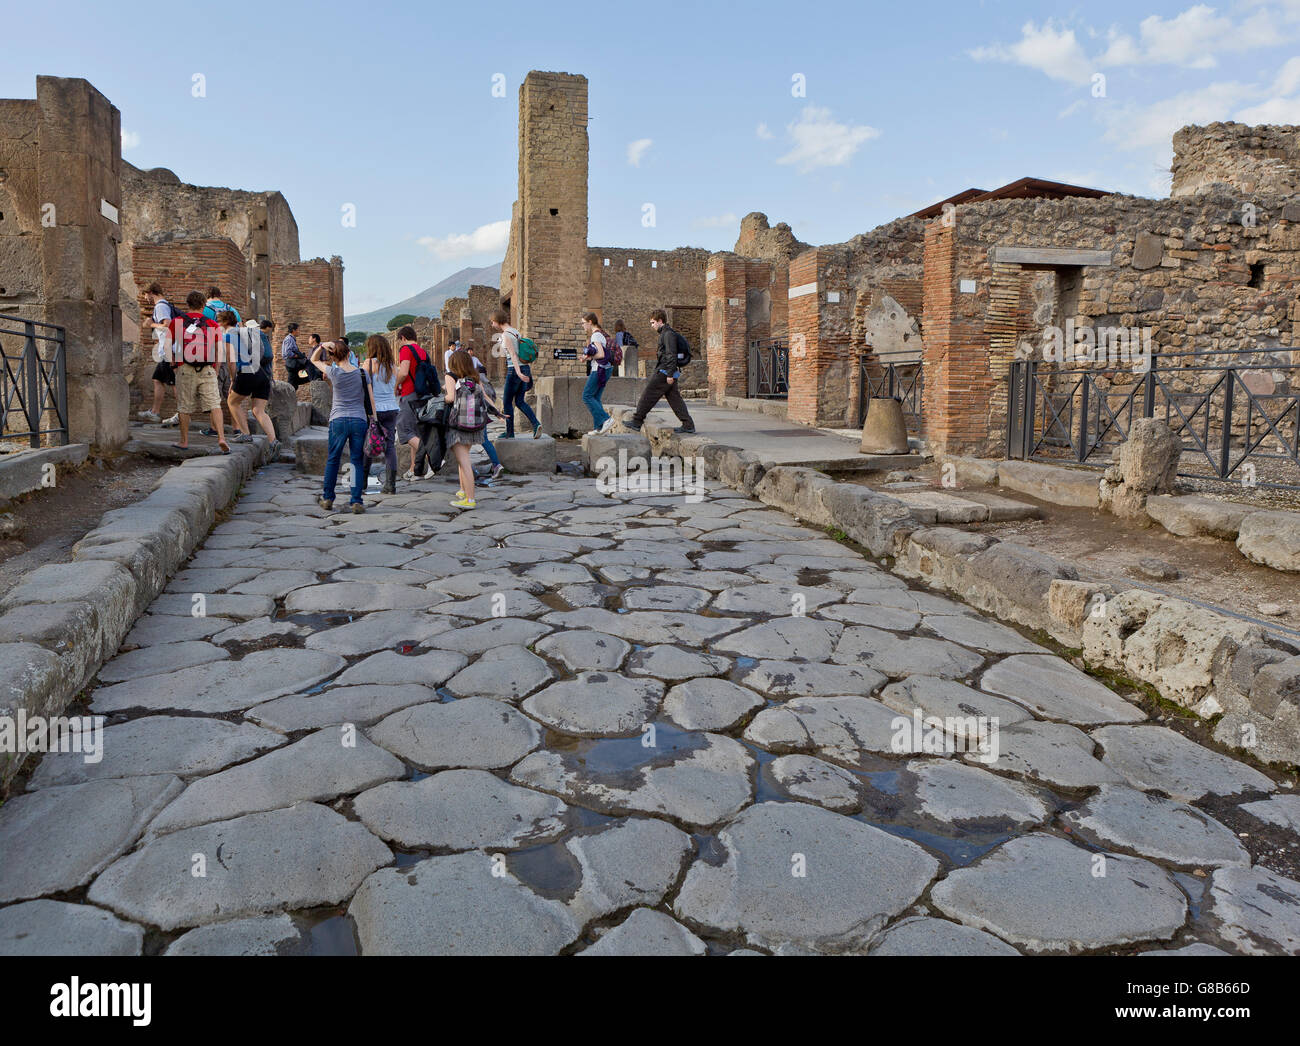 Antica strada, nel sito romano di Pompei, Campania, Italia. Pompei è un sito Patrimonio Mondiale dell'UNESCO. Foto Stock